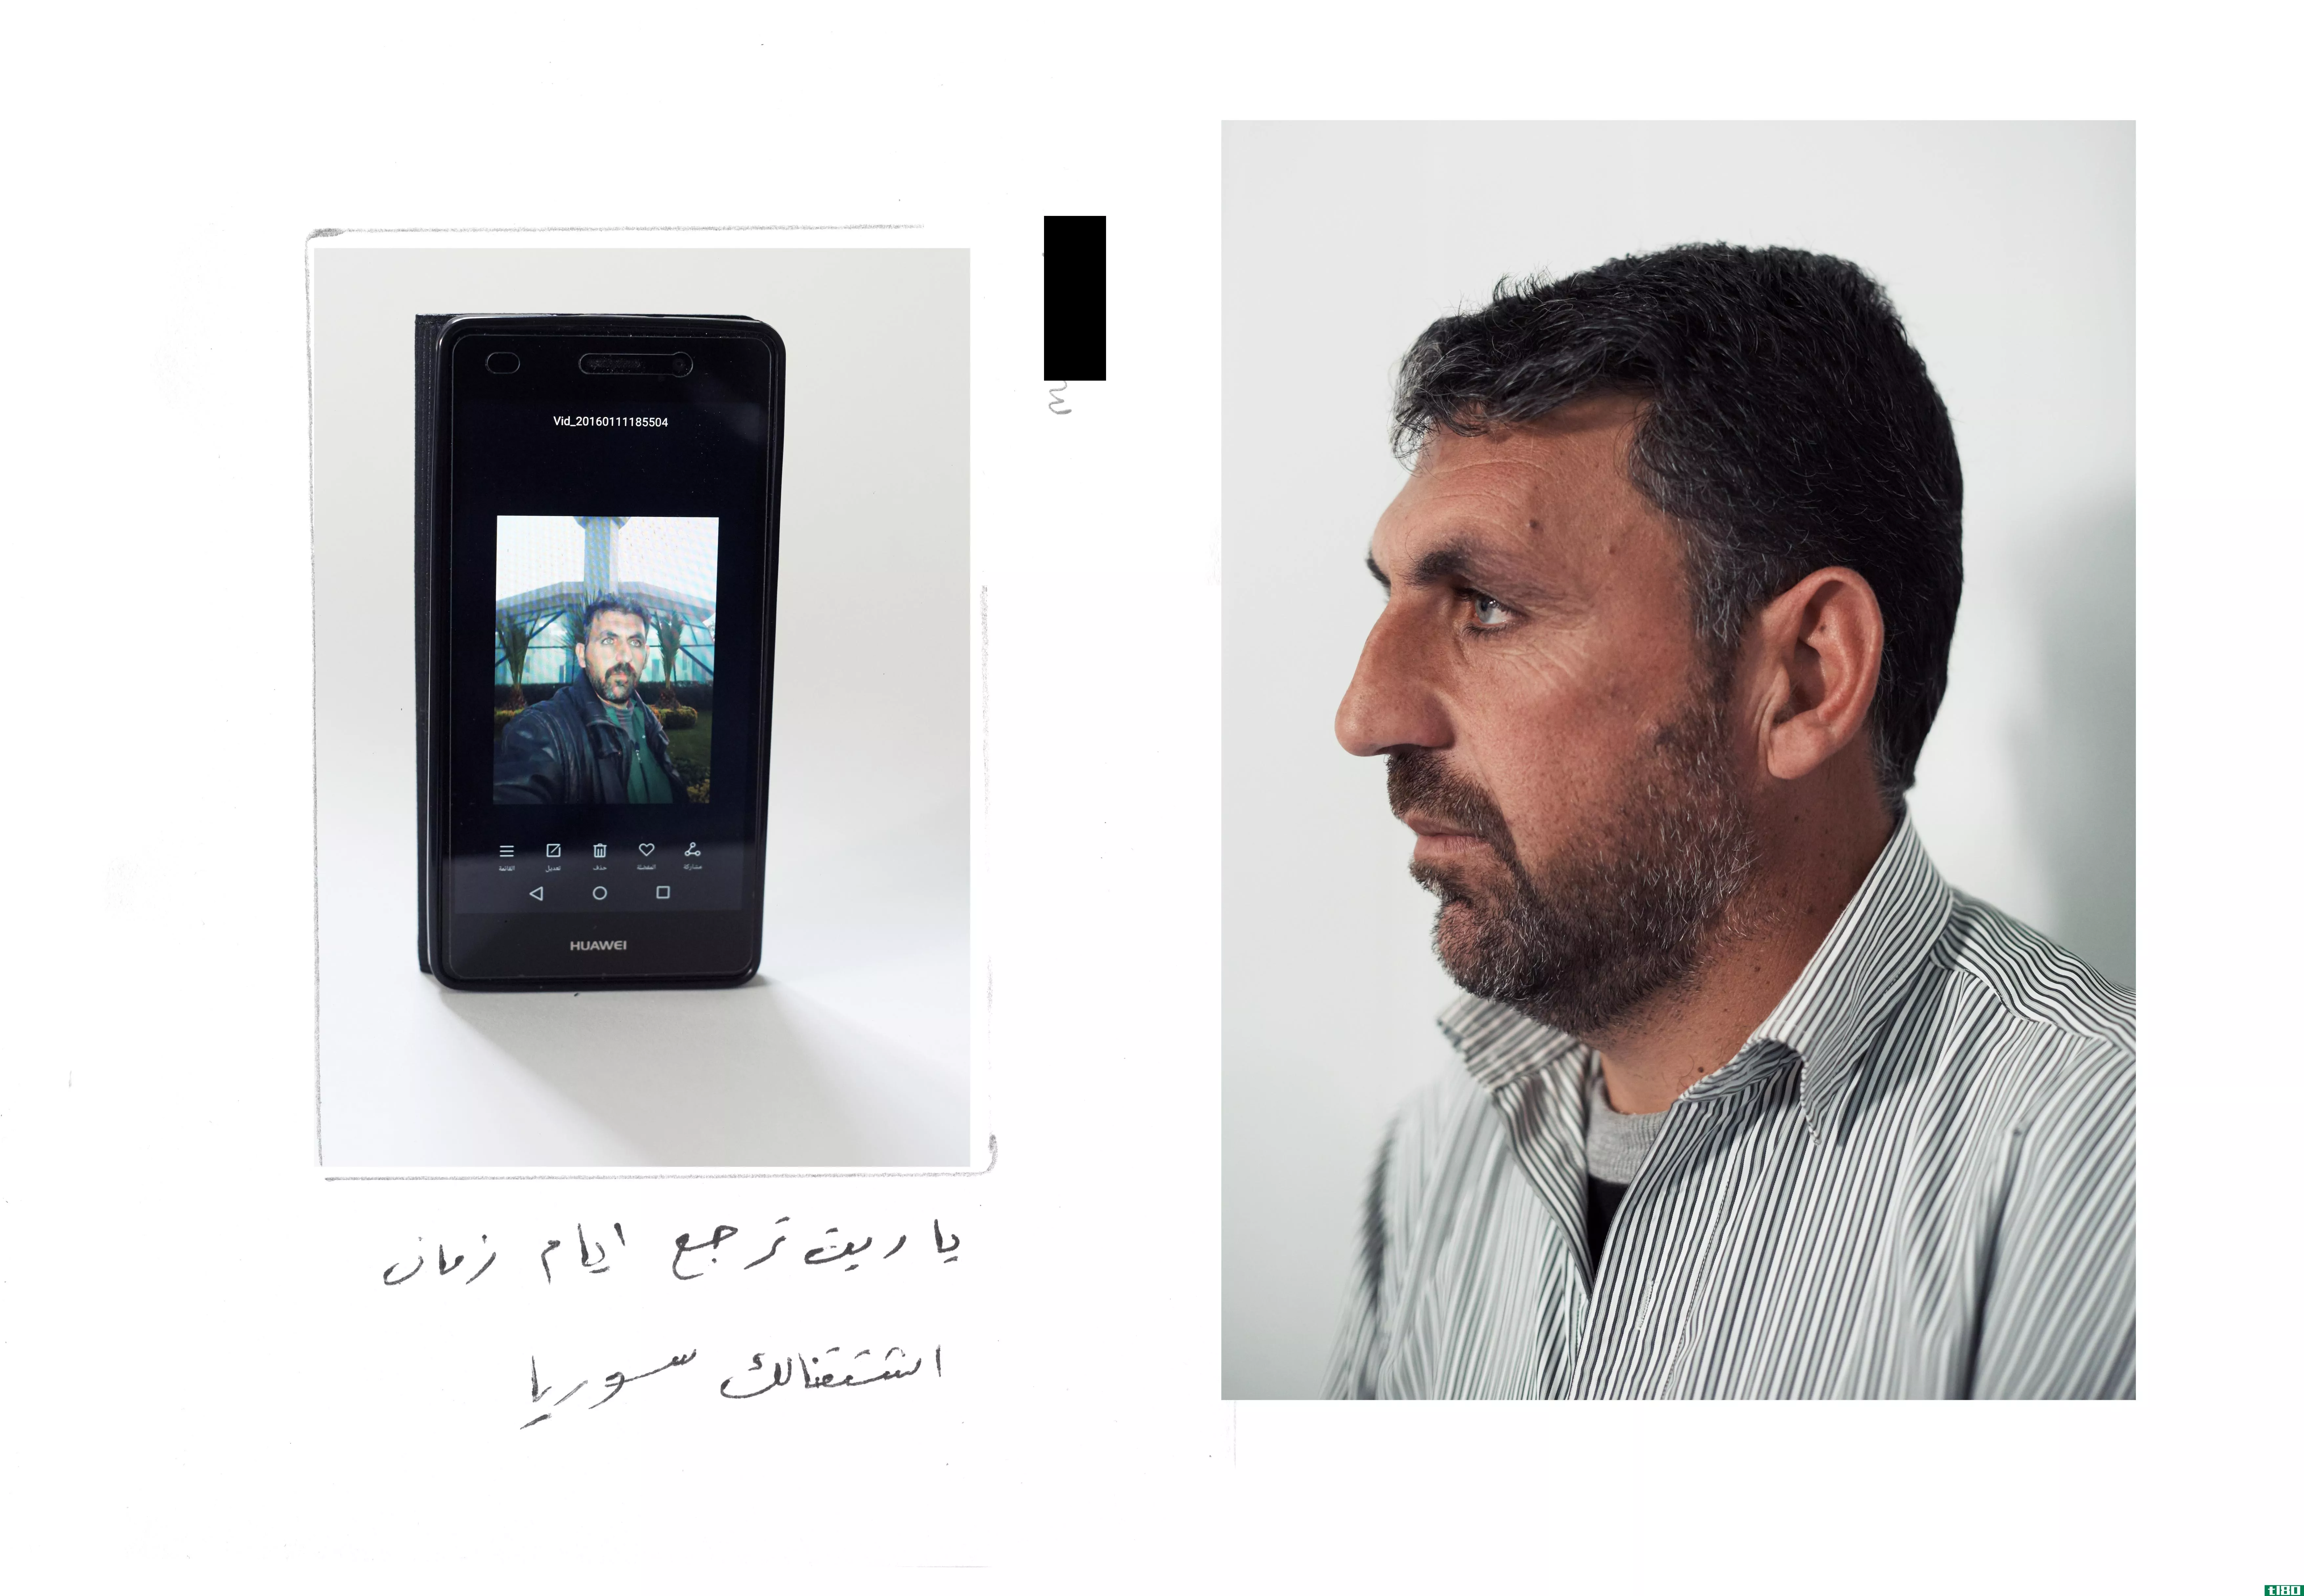 叙利亚难民分享储存在手机上的强大照片系列记忆